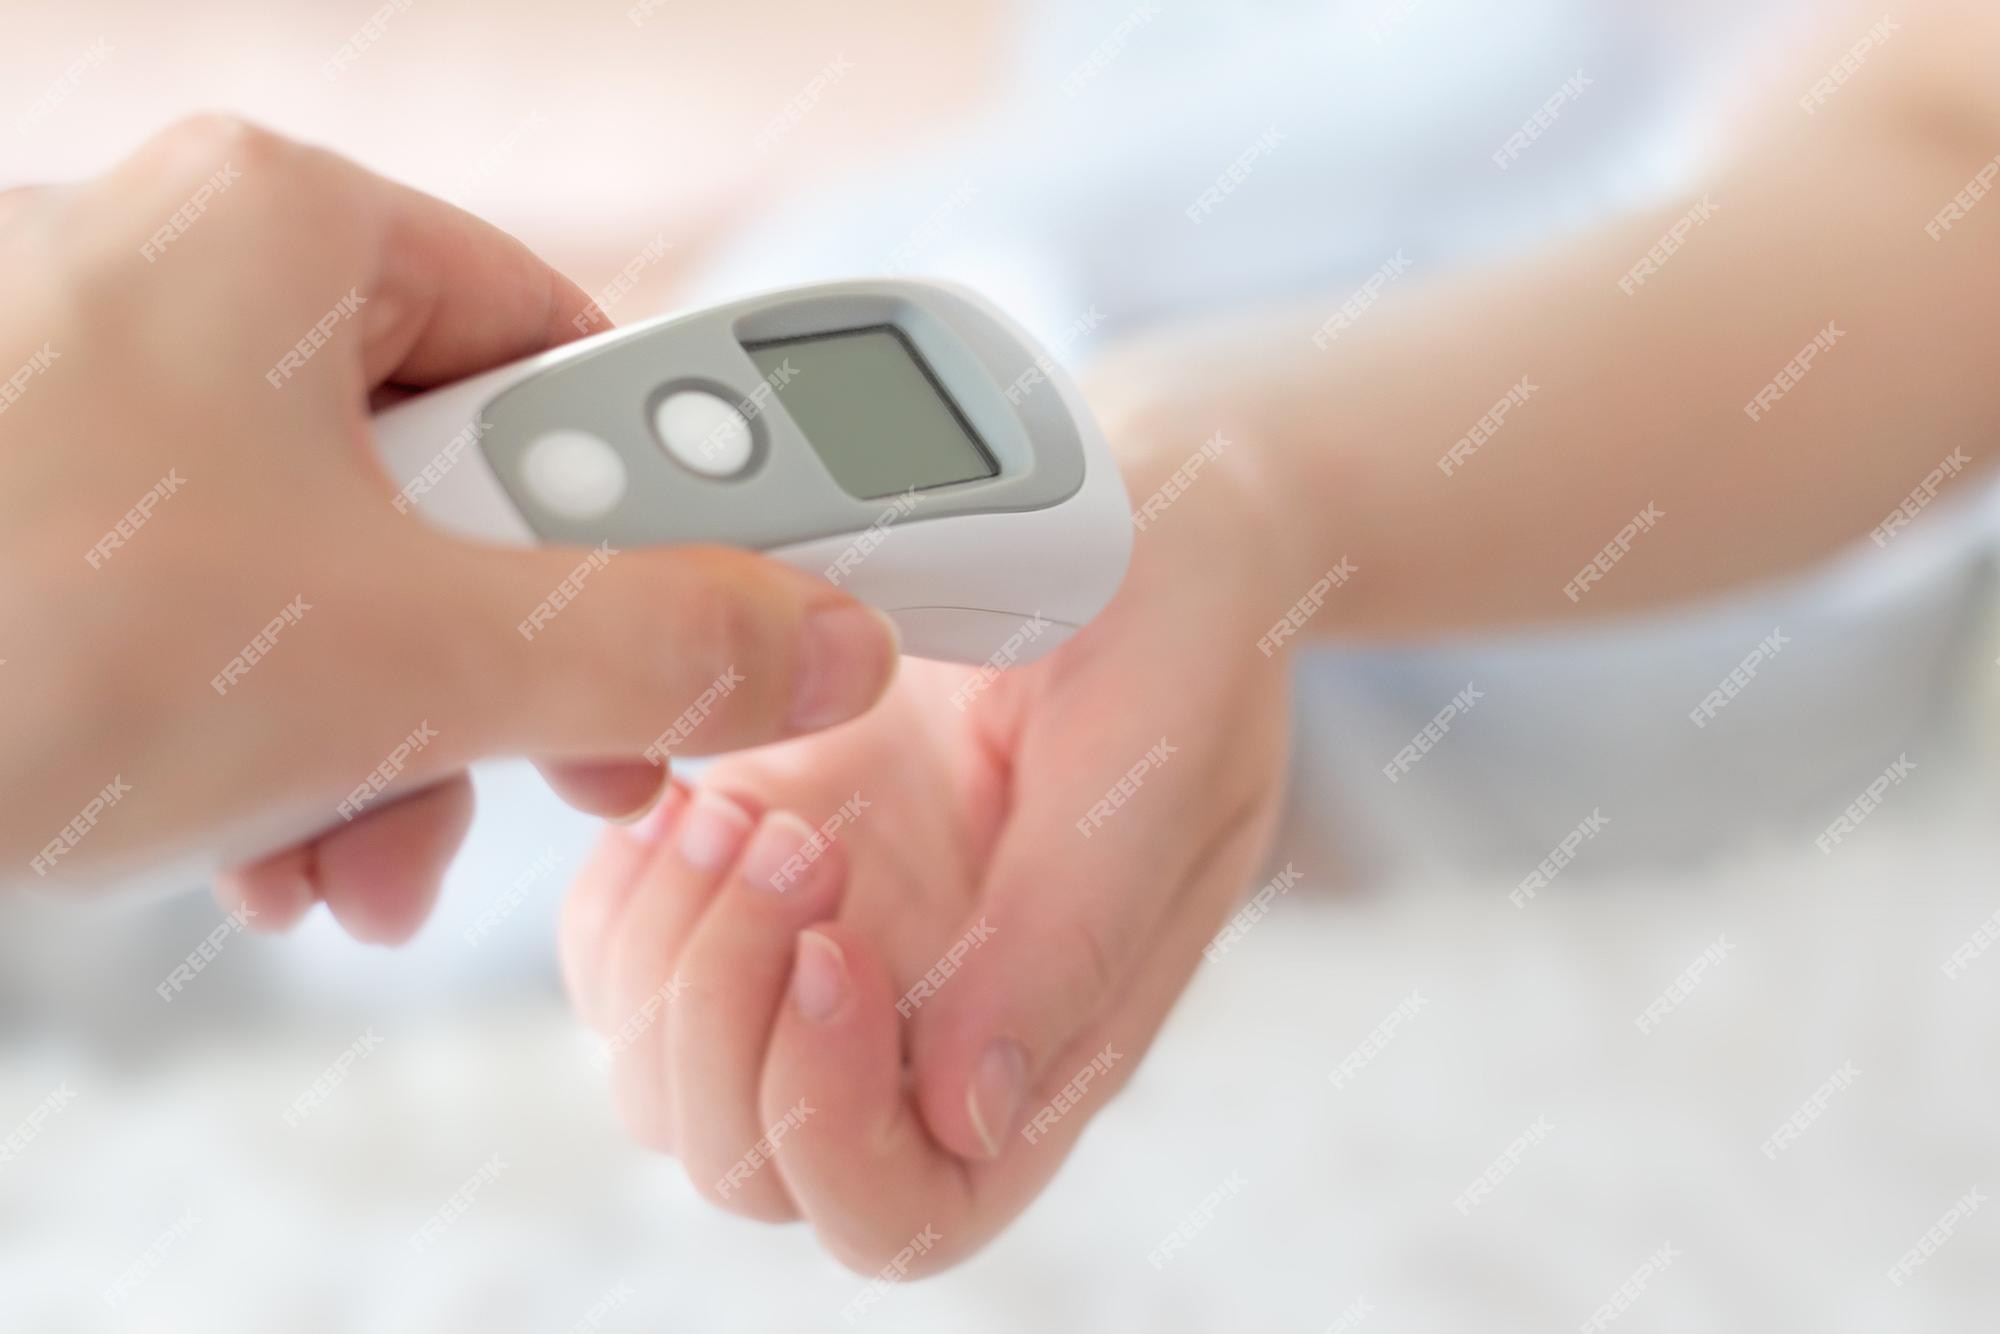 Mitones Multa pronunciación La mano de una mujer aplica un termómetro infrarrojo para medir la  temperatura corporal | Foto Premium